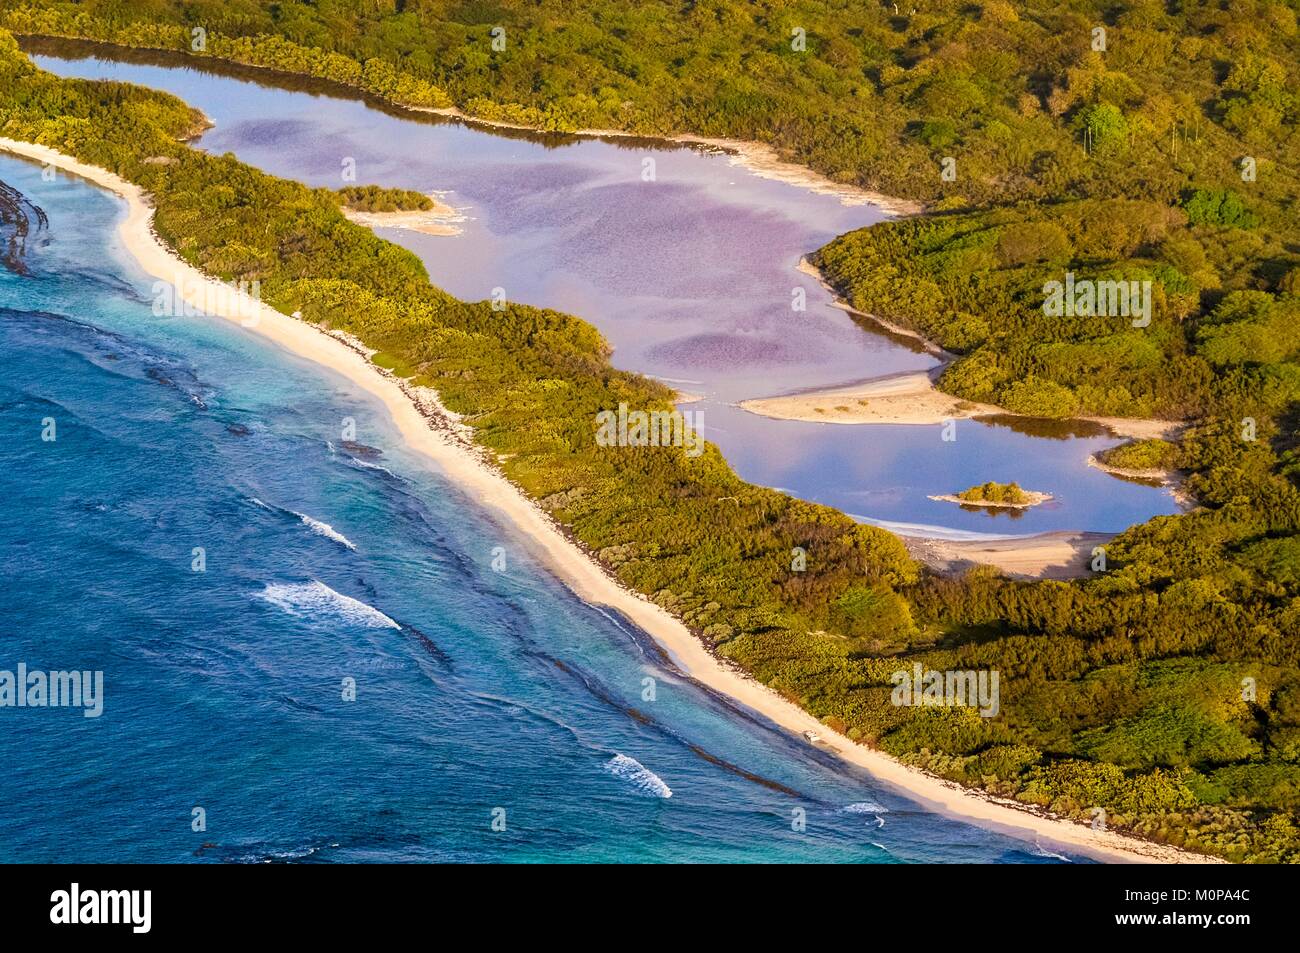 Cuenca del mar caribe fotografías e imágenes de alta resolución - Alamy